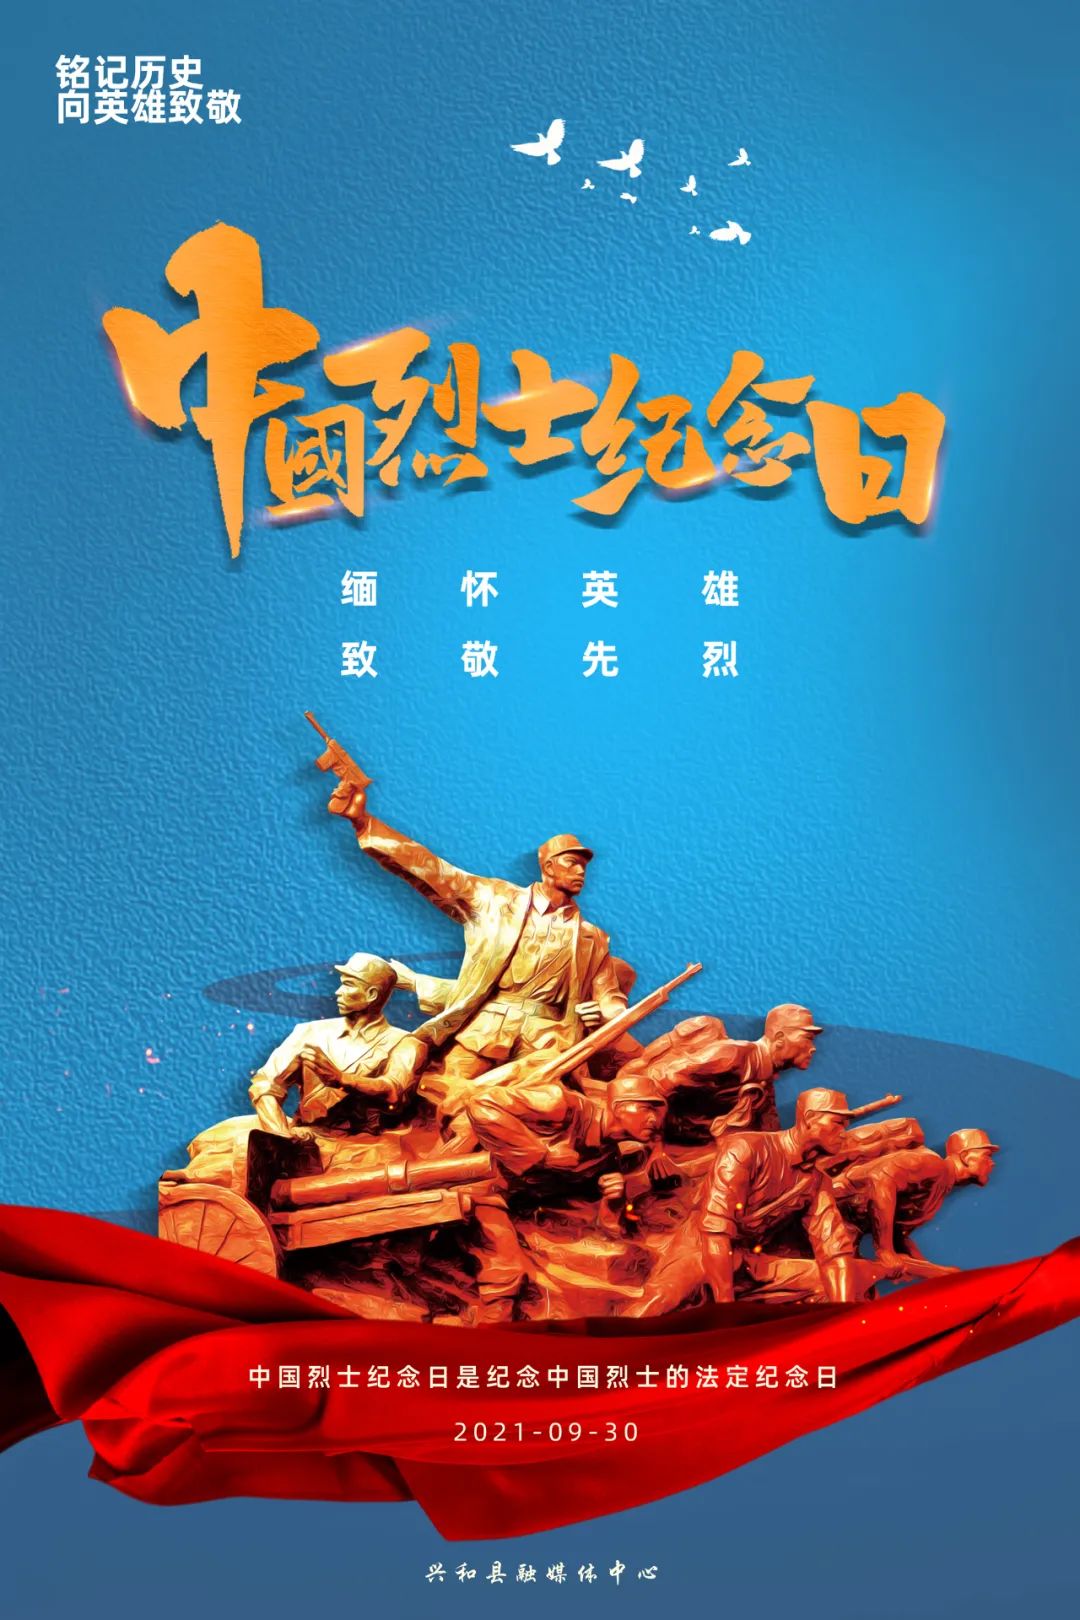 【原创海报】中国烈士纪念日